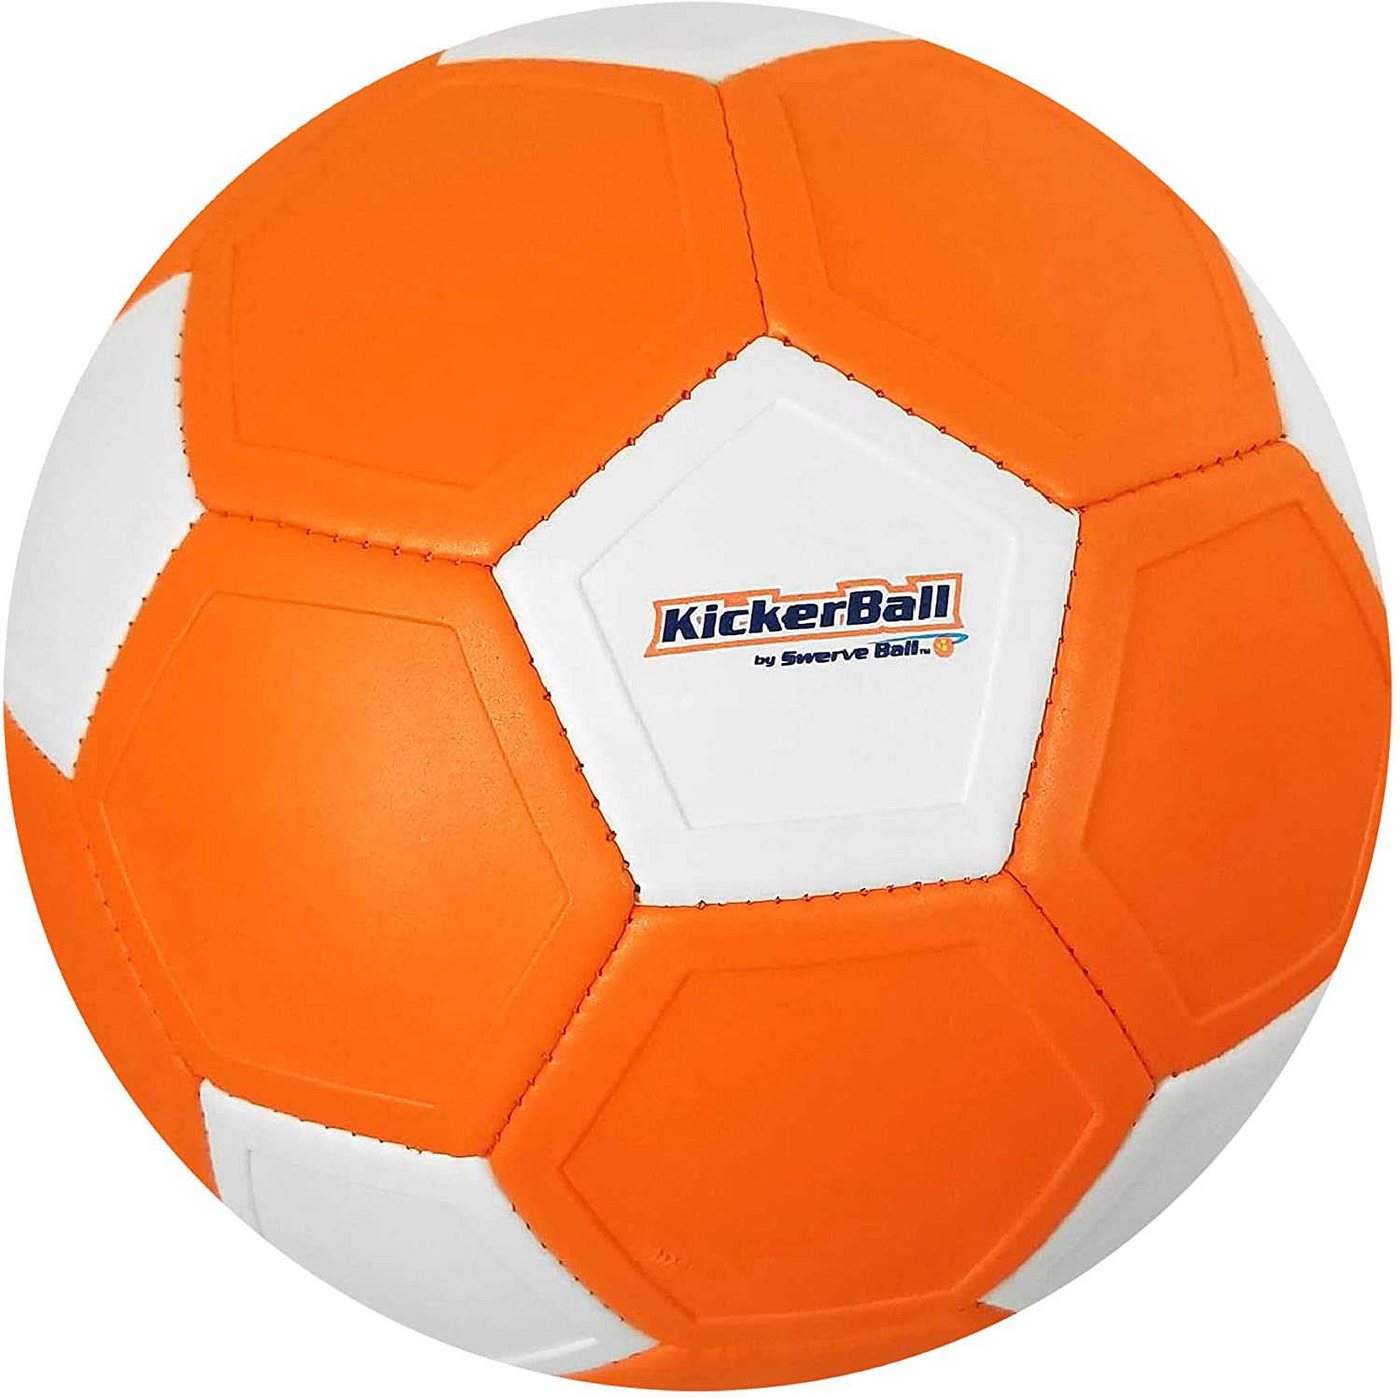 Brandunit Fußball Brandunit 01184 - Kickerball (orange) von Brandunit